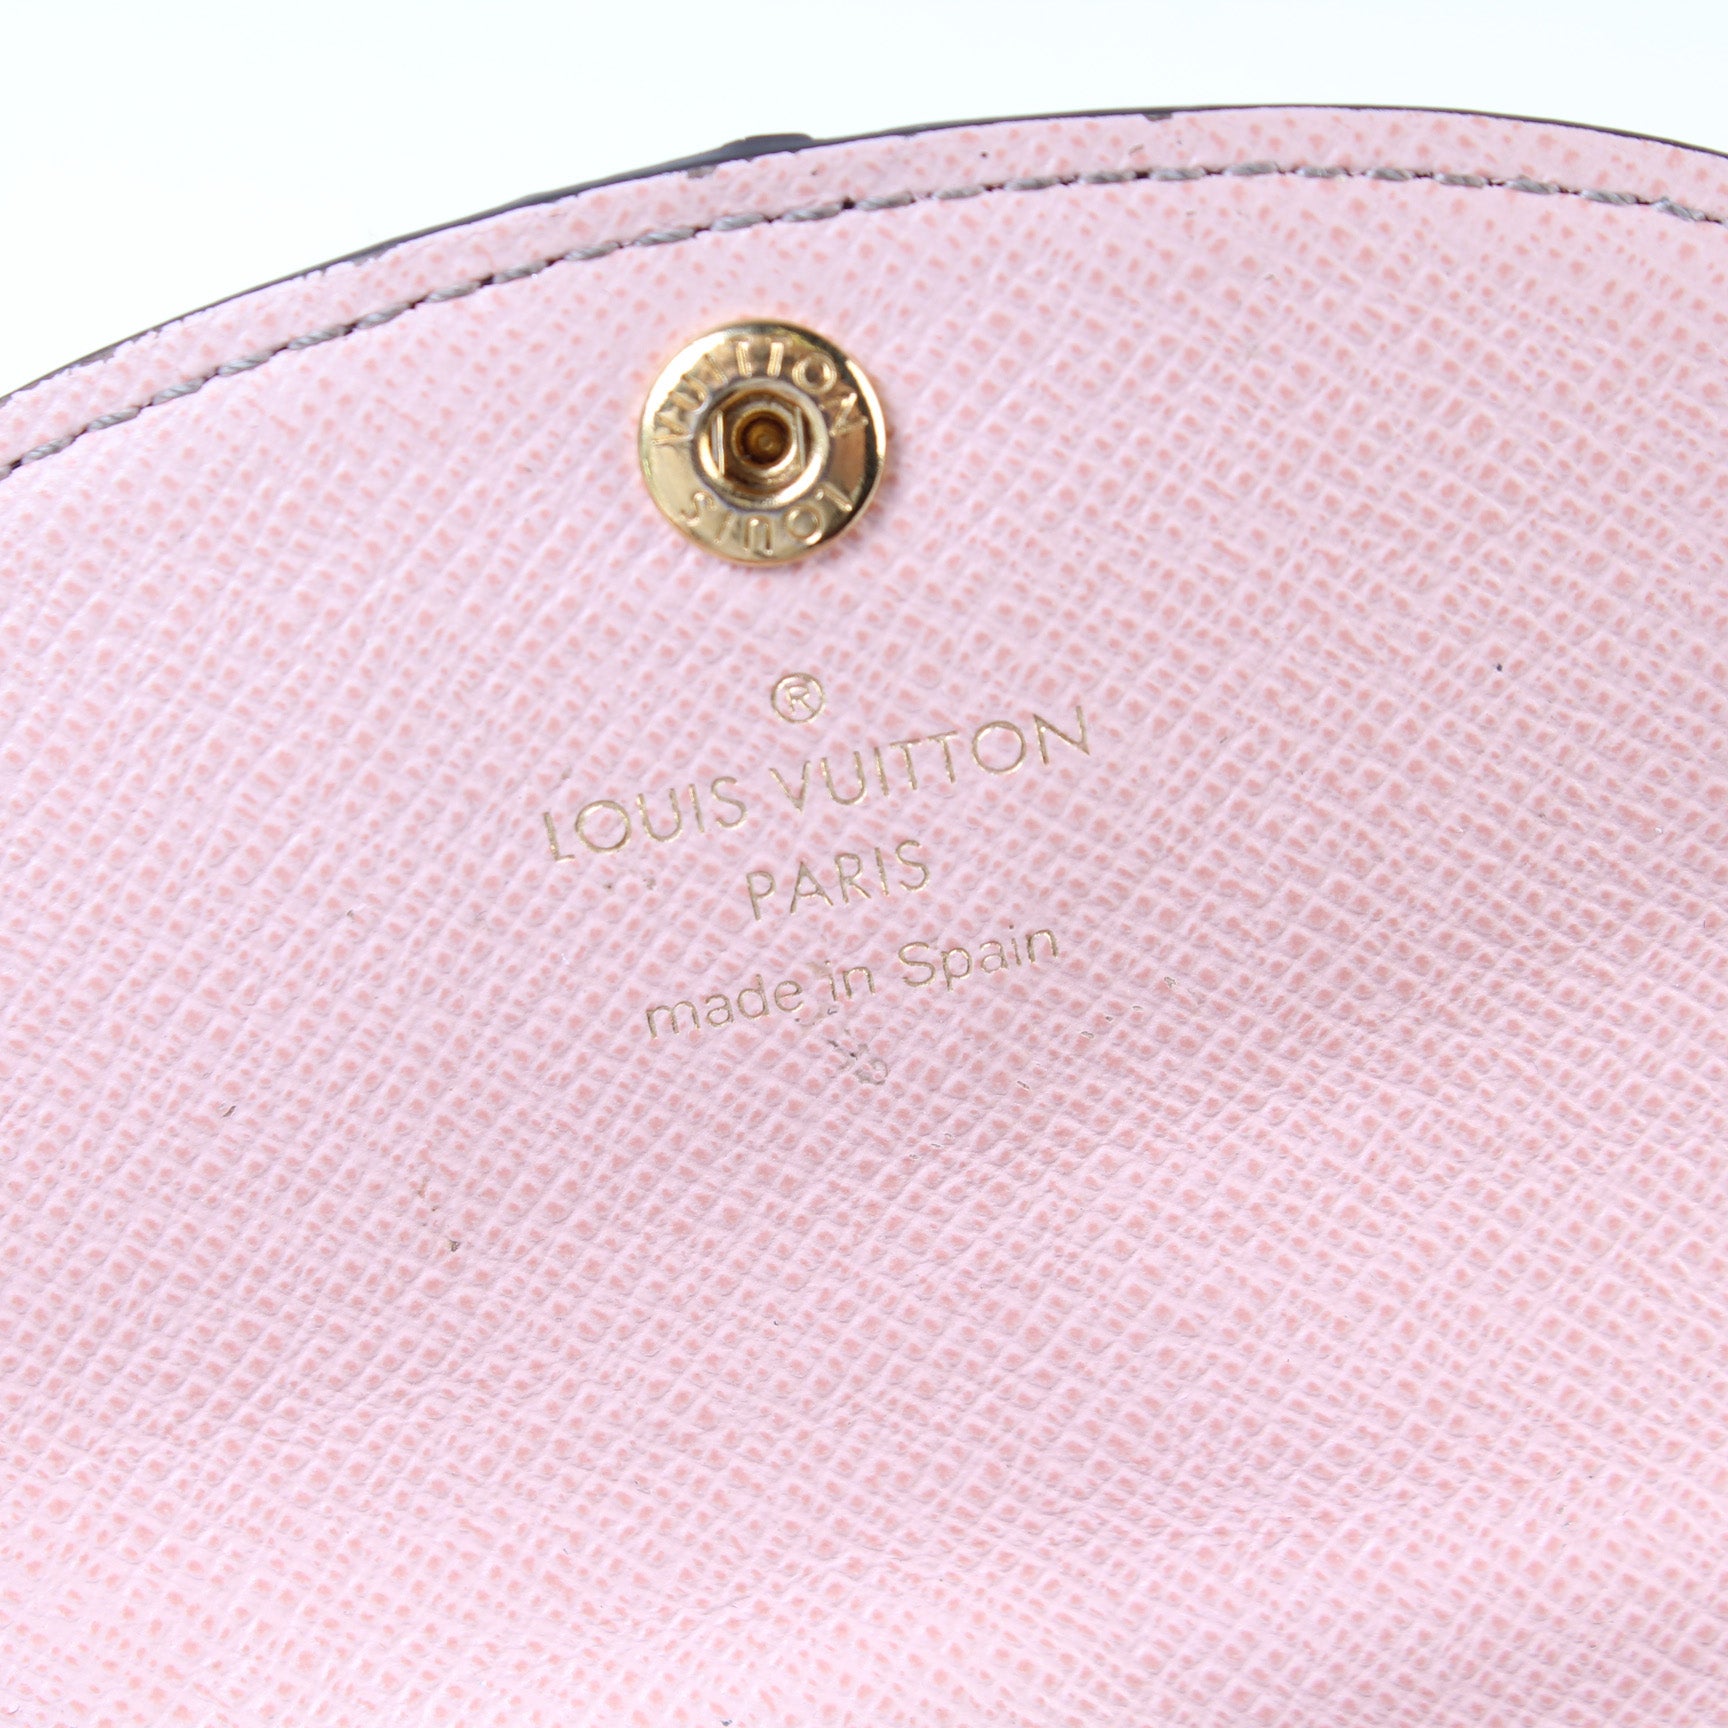 Louis Vuitton Emilie Wallet review and comparison to Rosalie